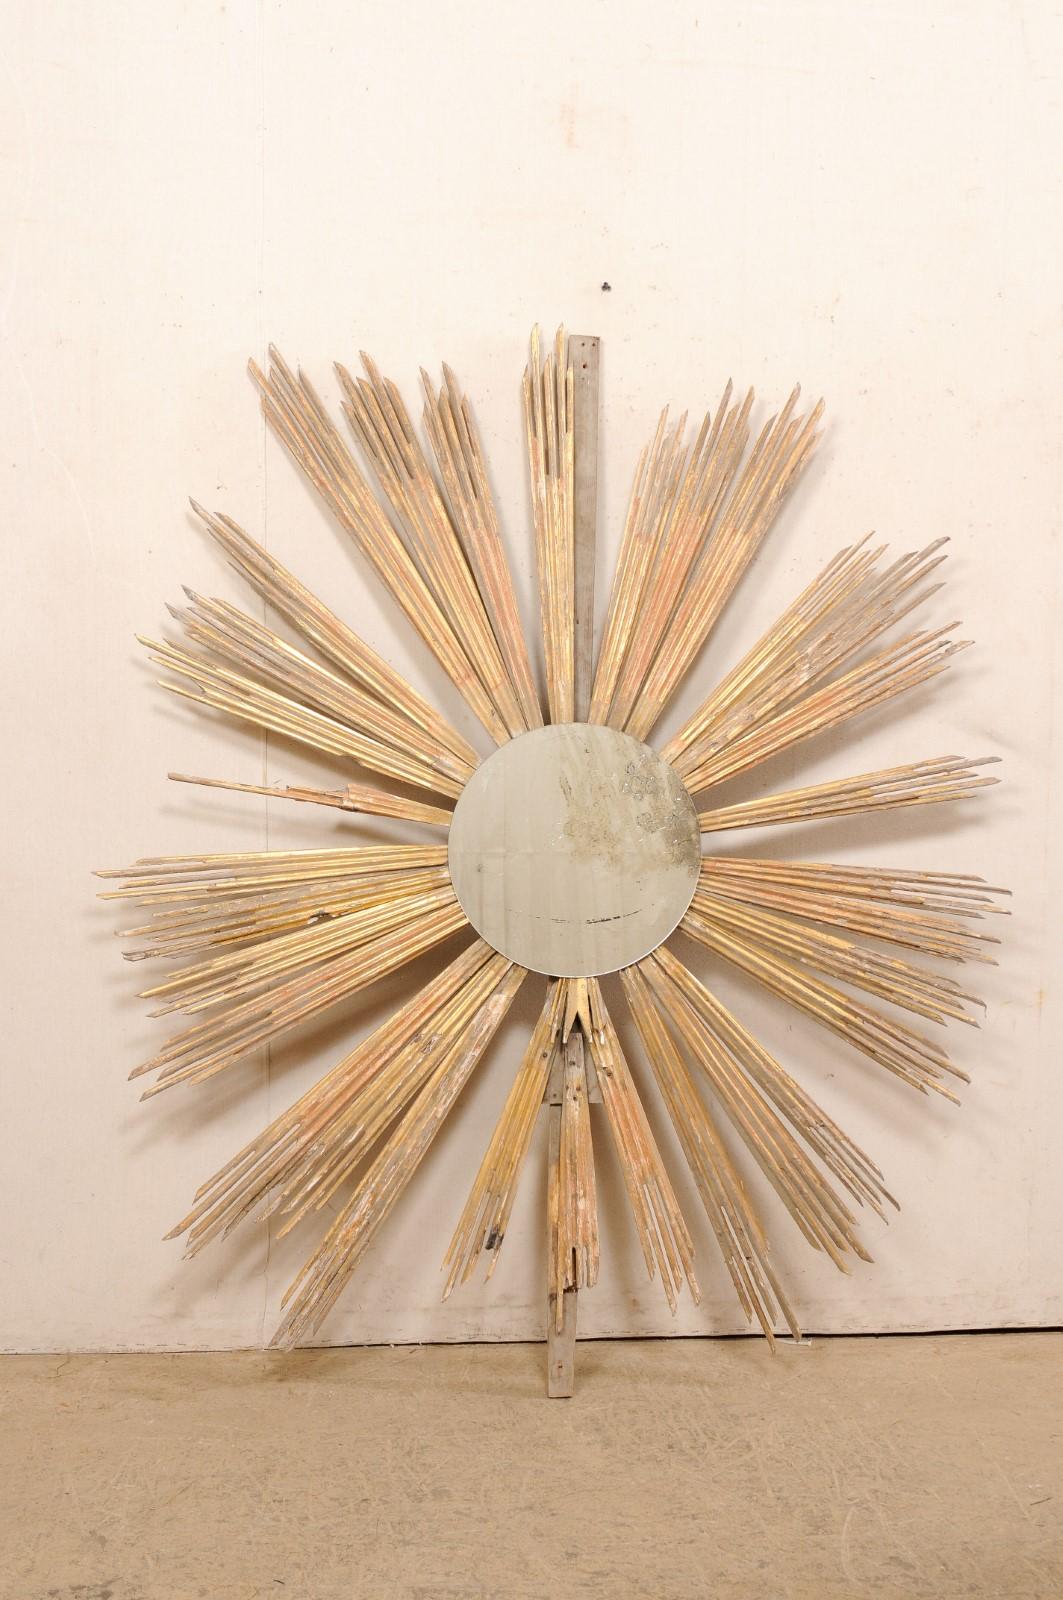 Ein italienischer, großformatiger Sonnenschirm aus vergoldetem Holz mit Spiegel aus dem 19. Jahrhundert. Dieses antike Wandornament aus Italien zeigt eine Reihe von geschnitzten, vergoldeten Strahlen, die in wellenförmigen Verläufen nach außen